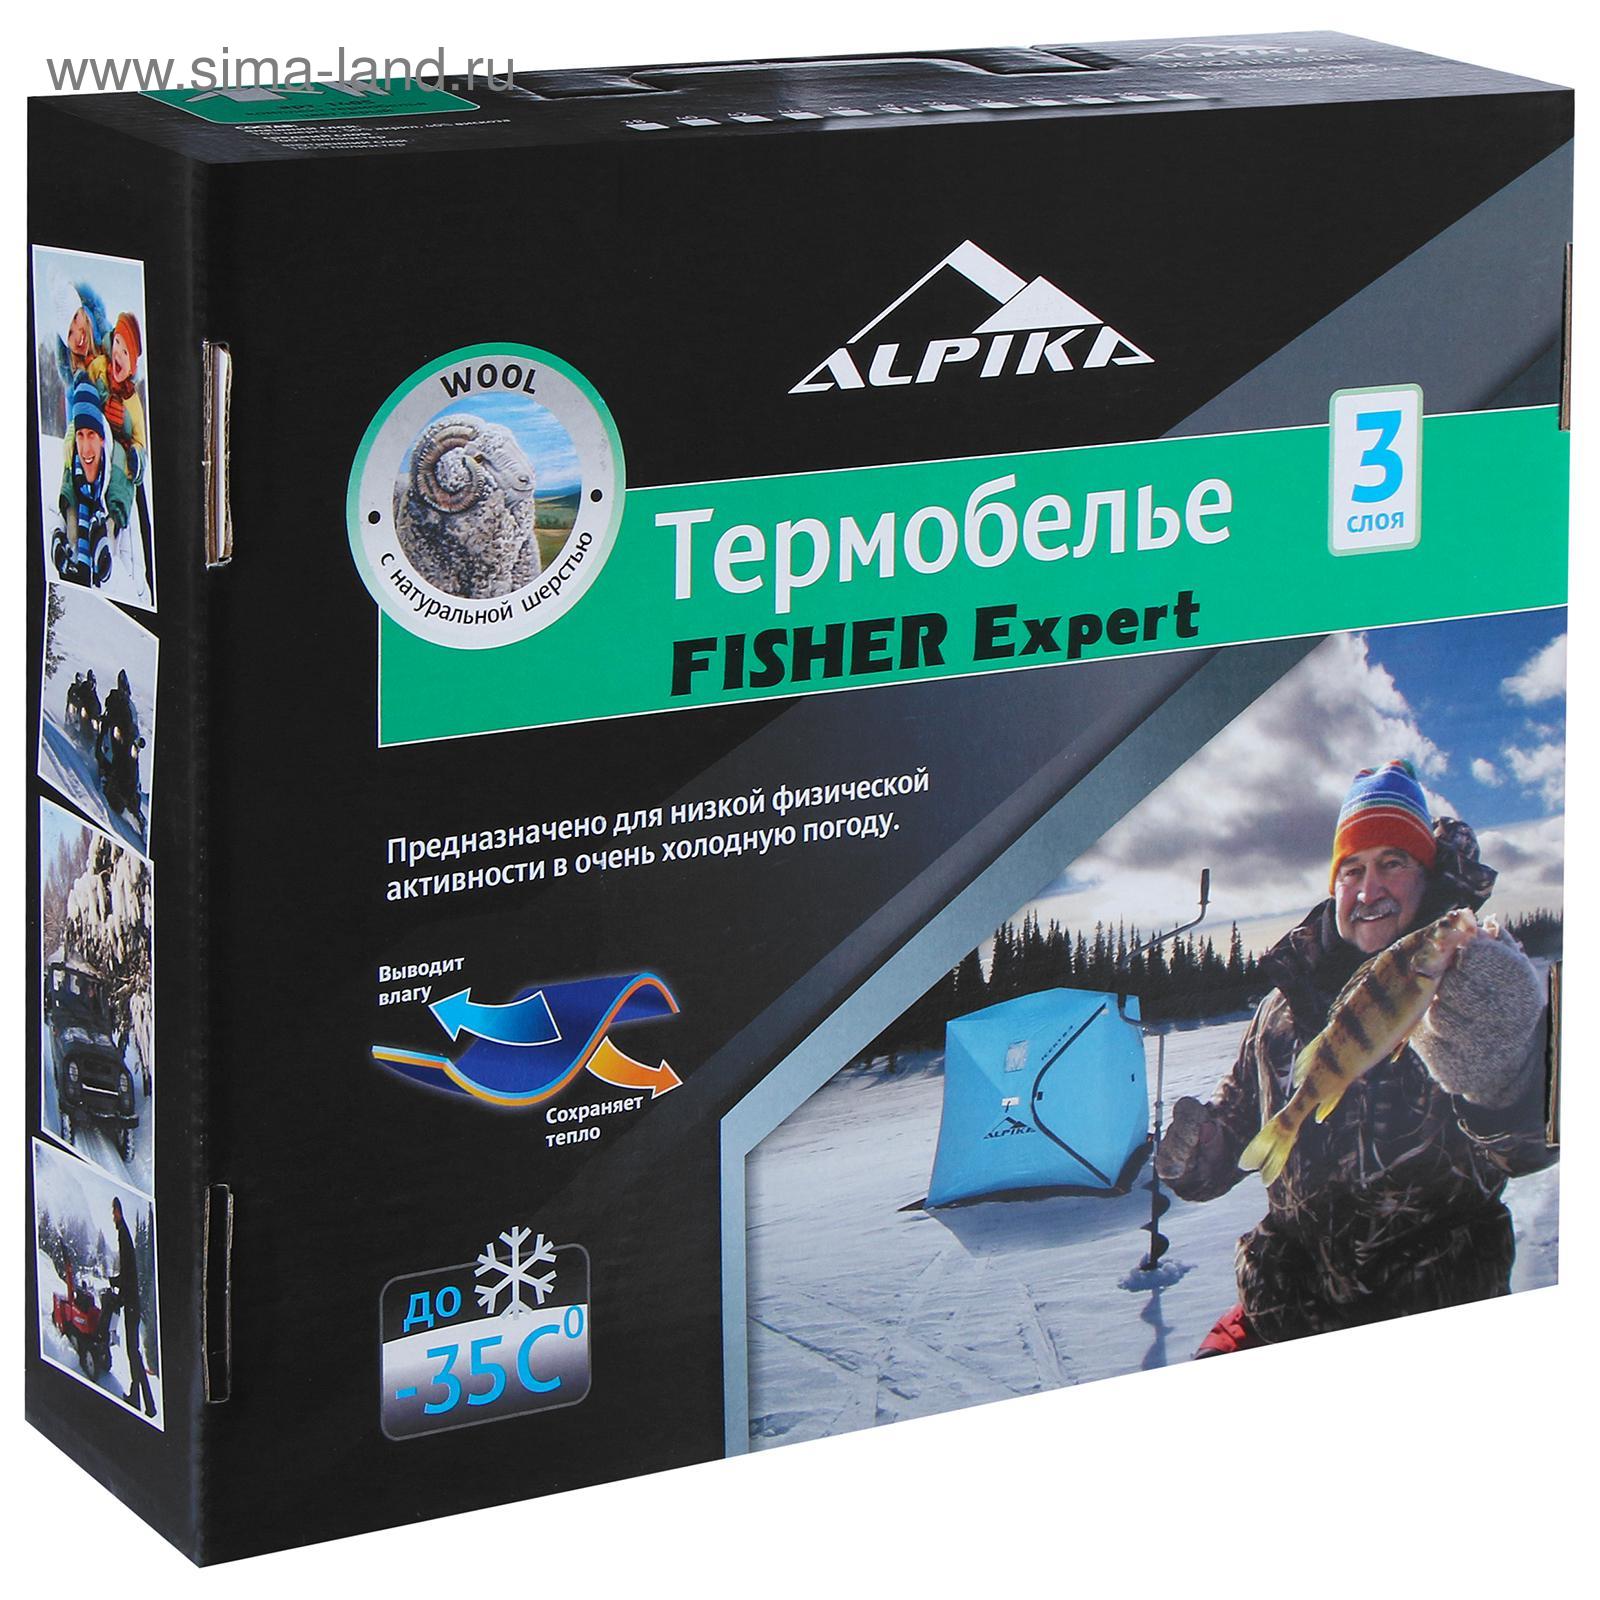 Комплект термобелья Alpika Fisher Expert, до -35°С, размер 46 (5310790) -Купить по цене от 3 200.00 руб.